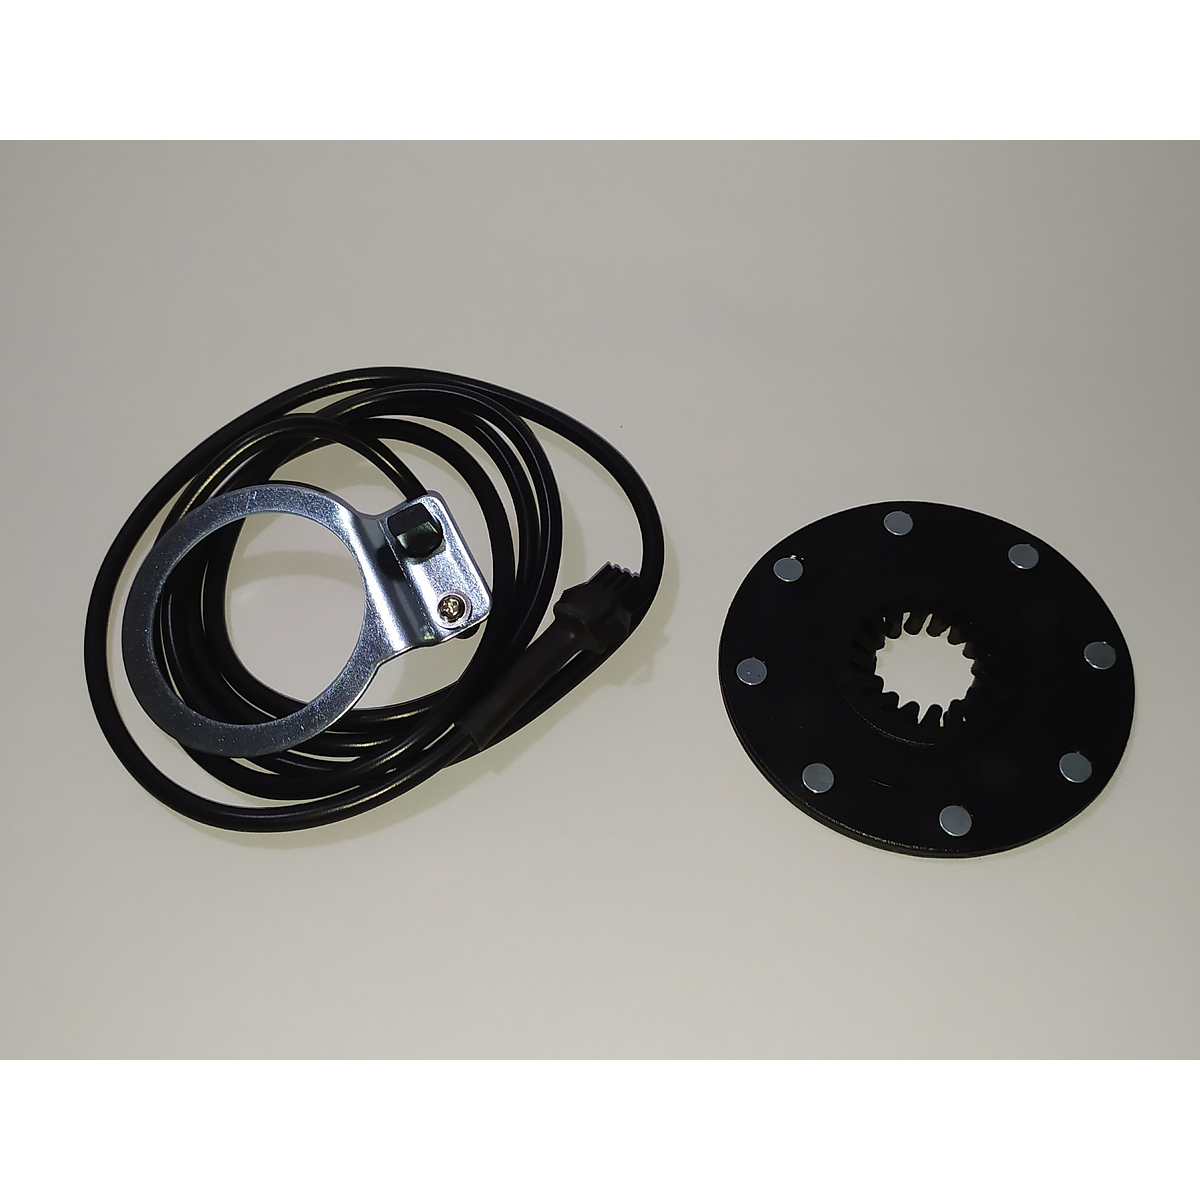 Sensor de pedaleo PAS e-bike bicicleta eléctrica repuesto